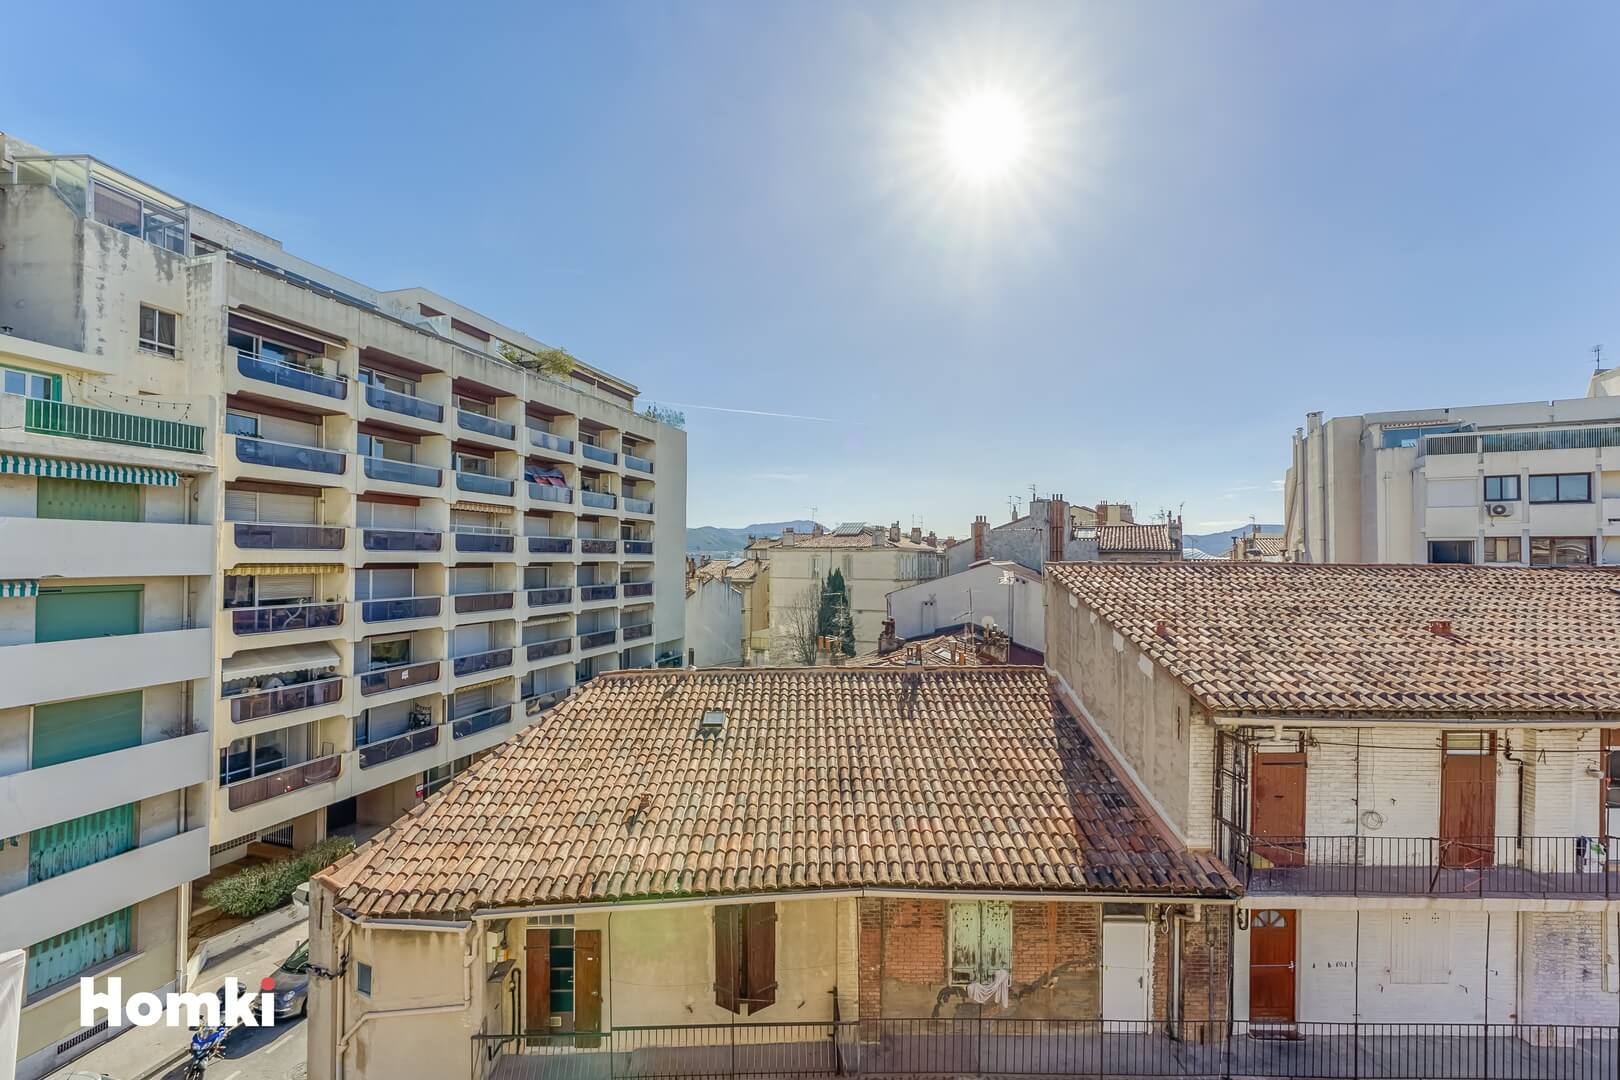 Homki - Vente Appartement  de 53.0 m² à Marseille 13005